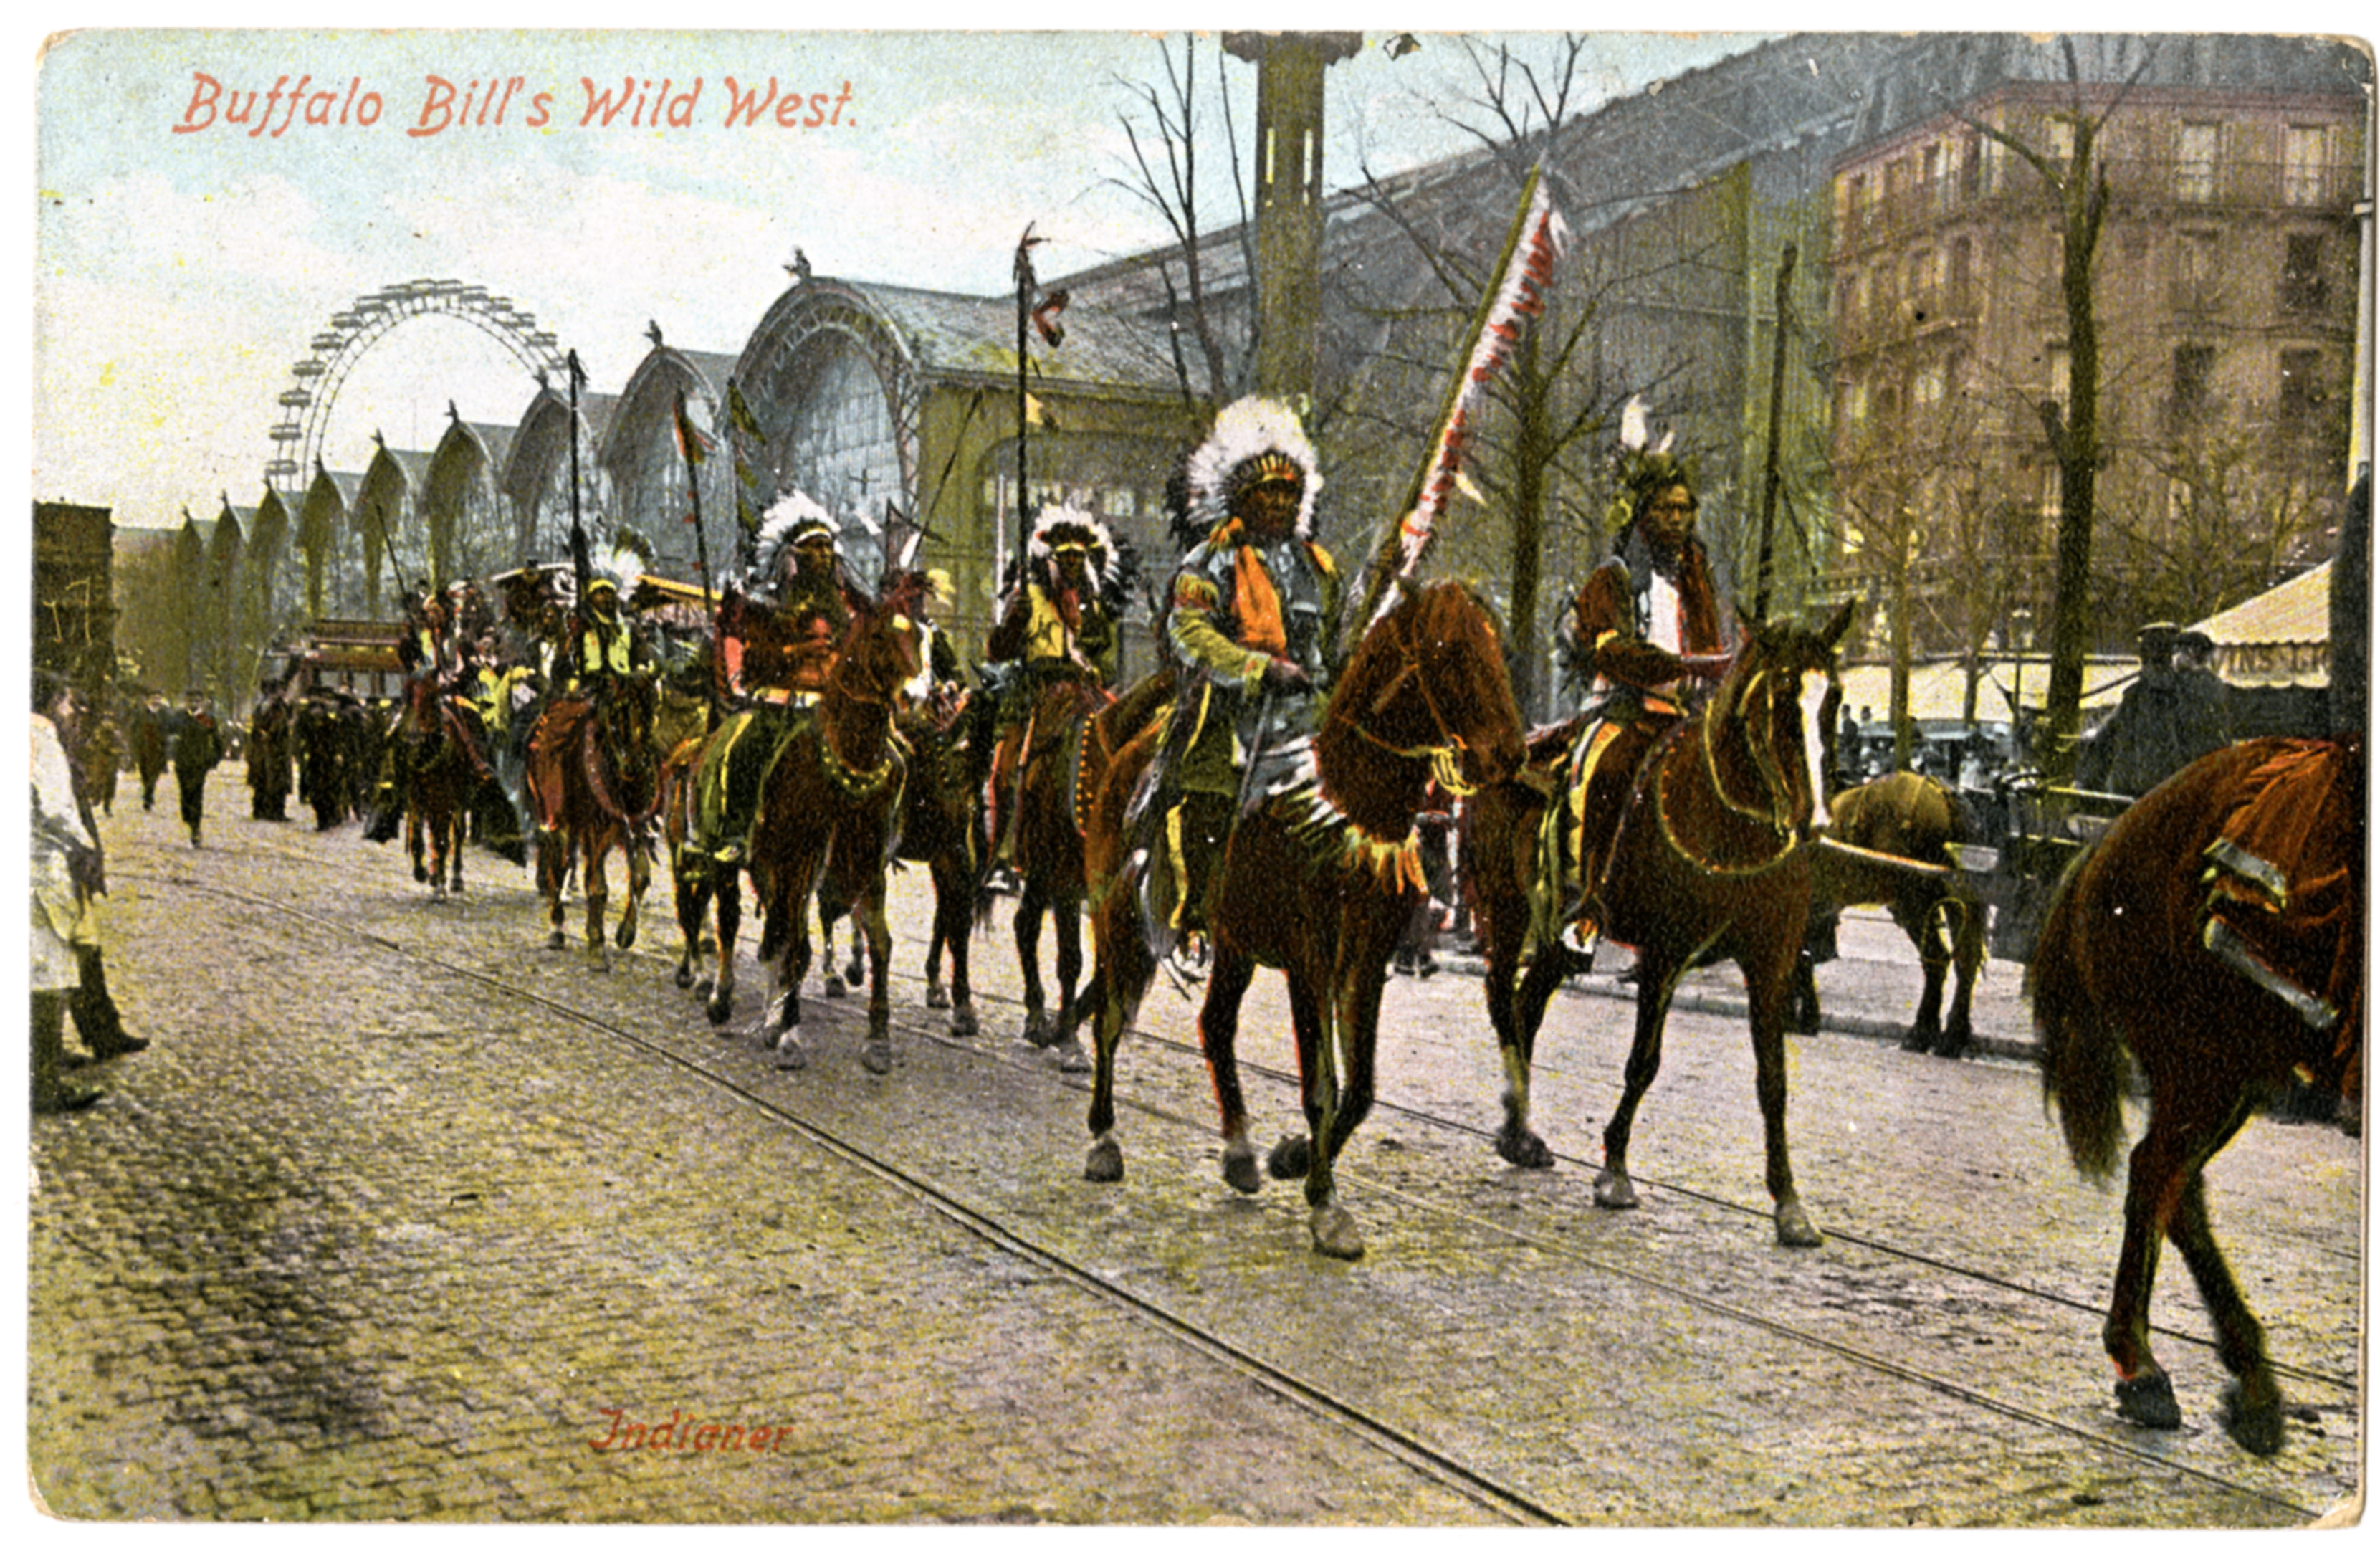 Carte postale souvenir du Buffalo Bill’s Wild West, Groupe d’Indiens défilant à Paris, première moitié du 20e siècle